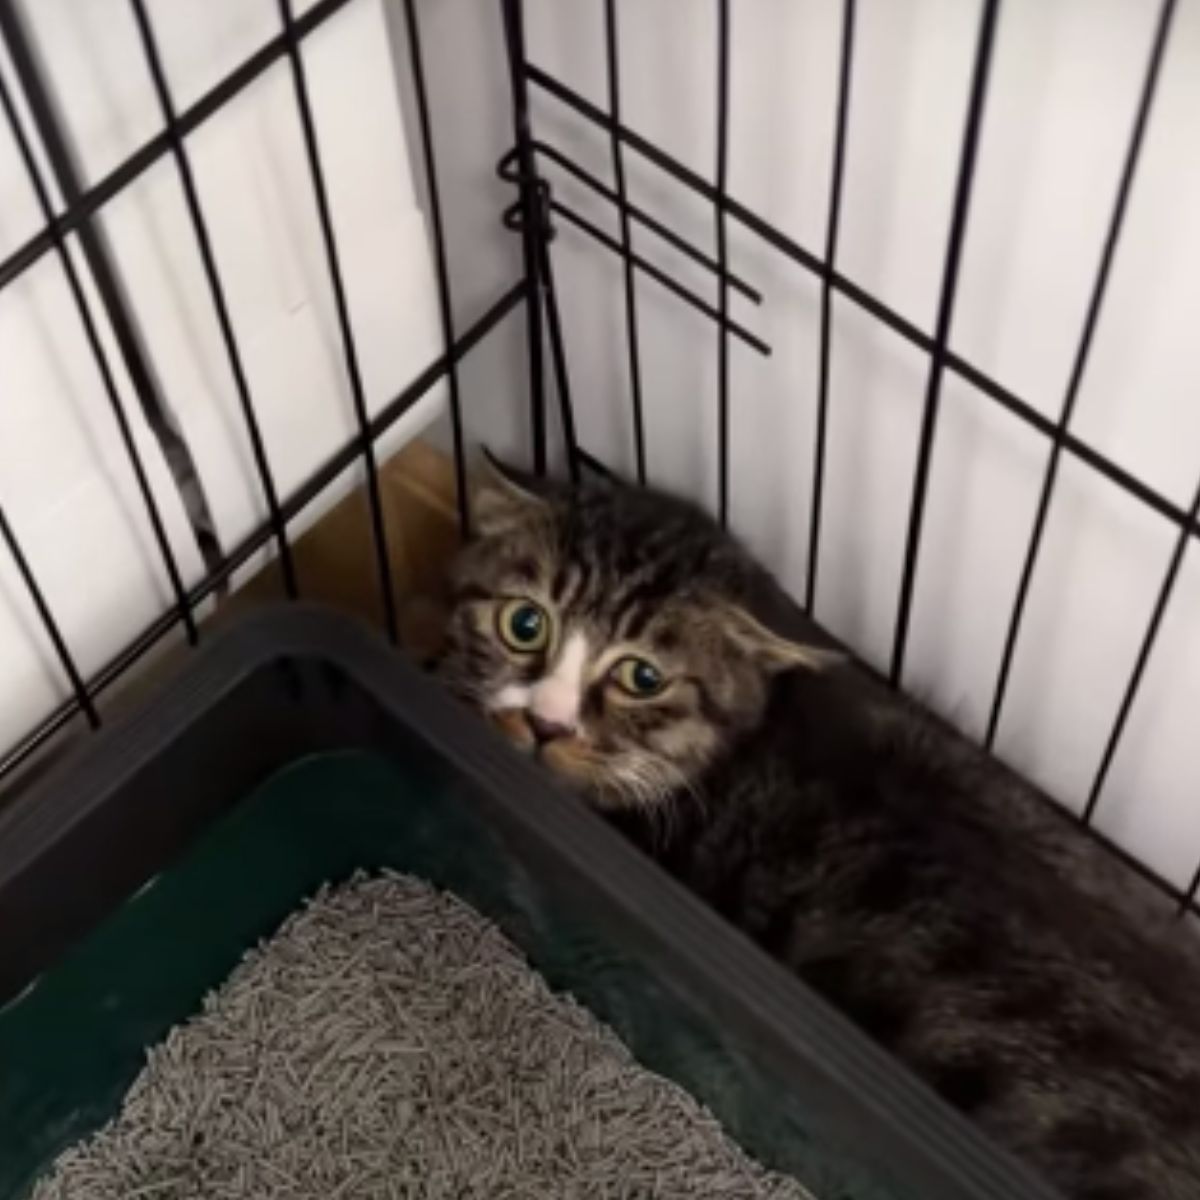 kitten hiding in a kennel